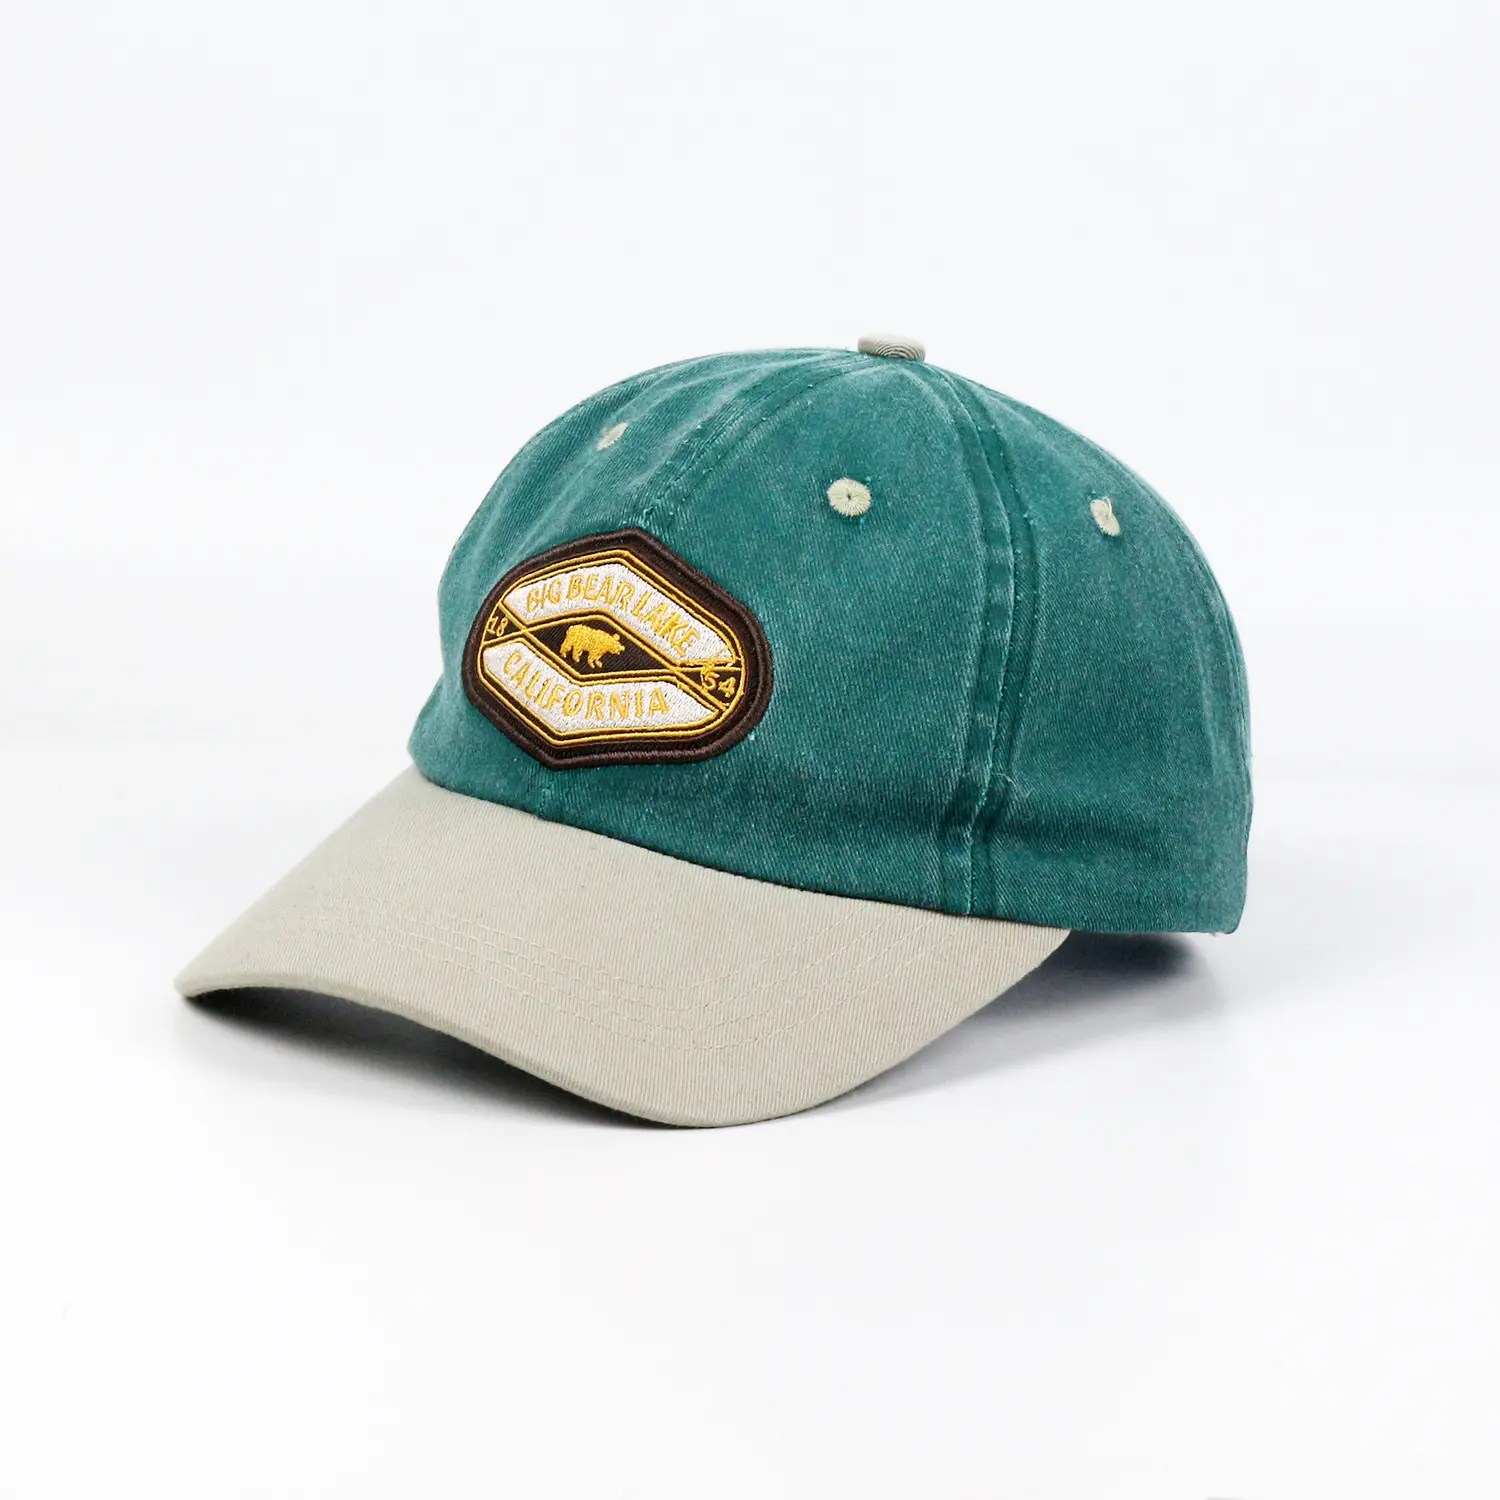 Haute qualité Soft Top 6 panneaux casquettes de baseball coton lavé mince matériel chapeaux casquettes